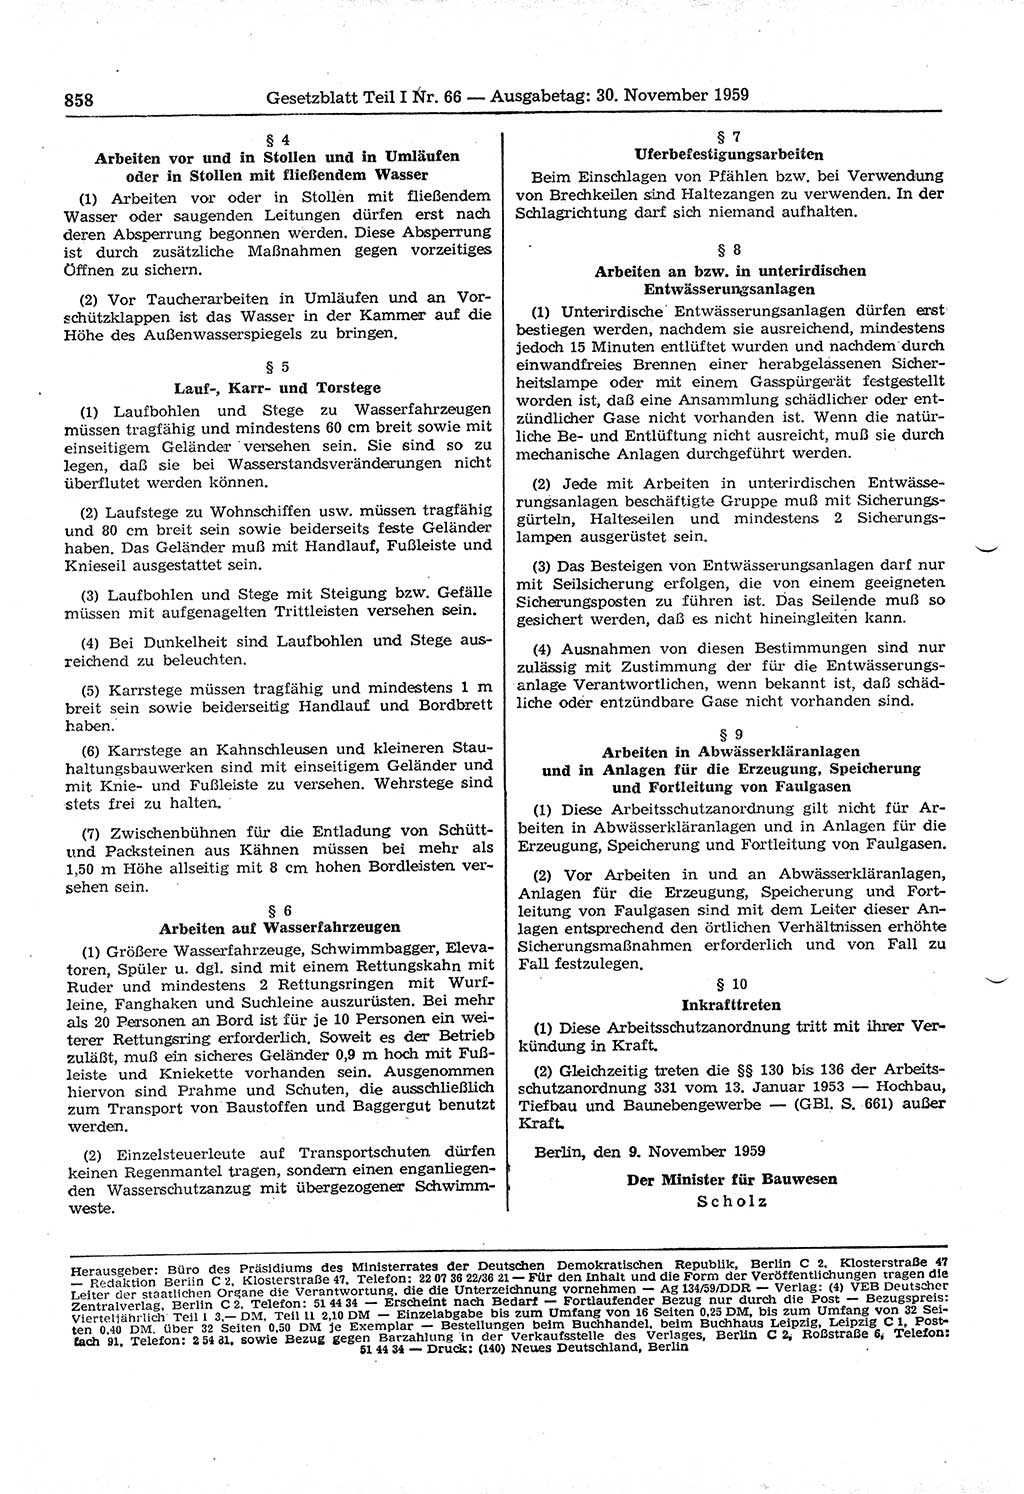 Gesetzblatt (GBl.) der Deutschen Demokratischen Republik (DDR) Teil Ⅰ 1959, Seite 858 (GBl. DDR Ⅰ 1959, S. 858)